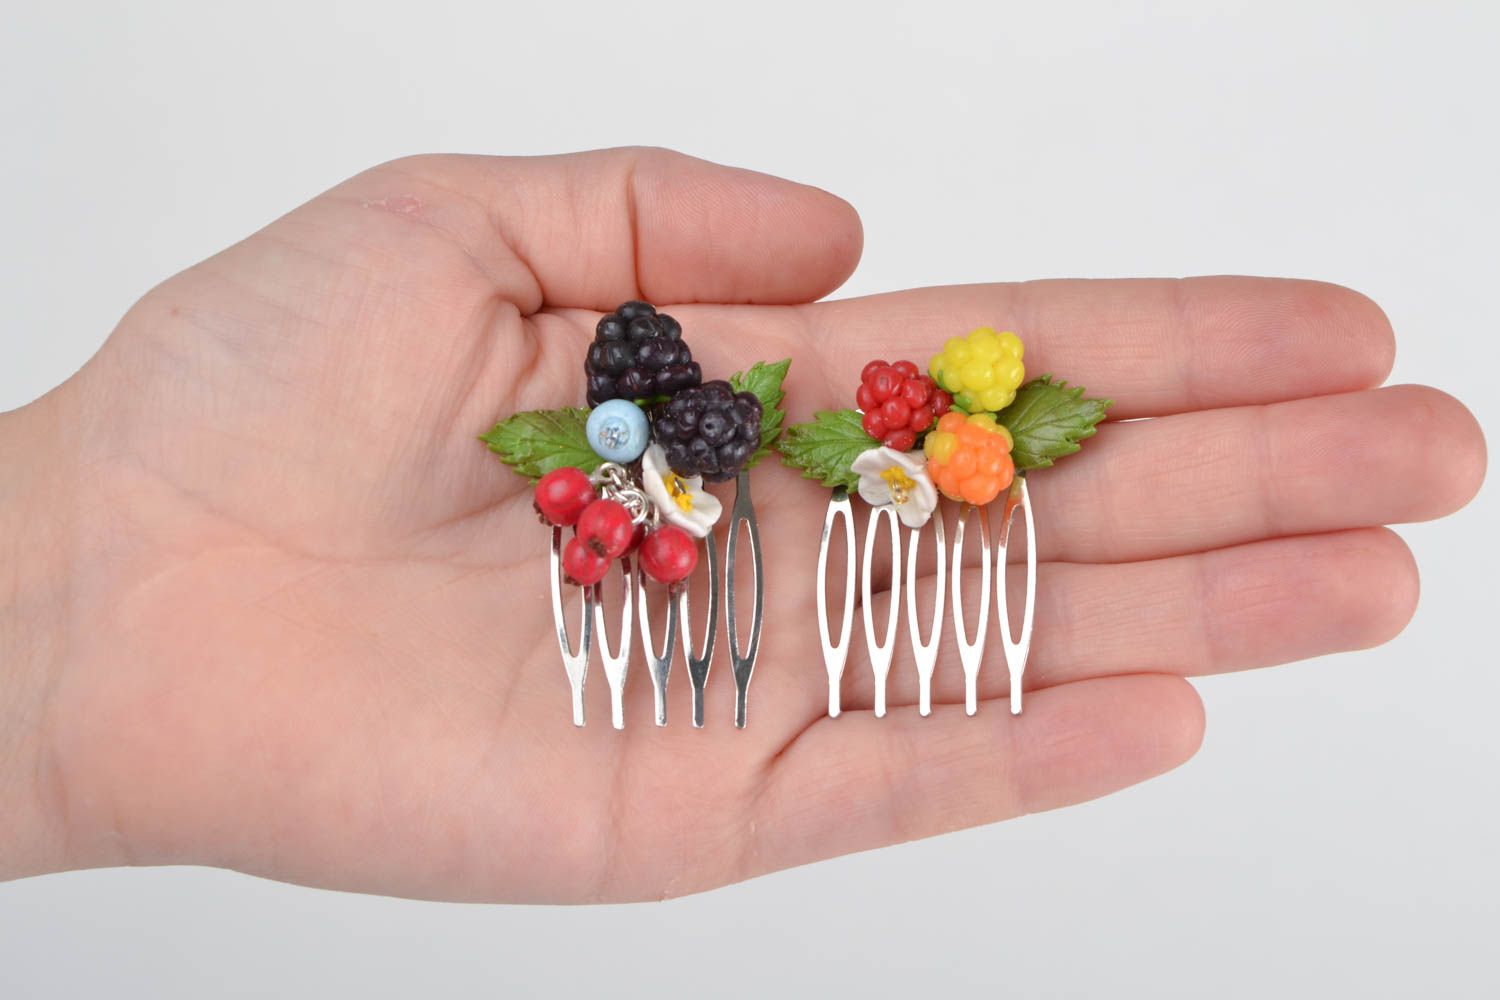 Гребни для волос с ягодами из полимерной глины набор 2 штуки ручной работы фото 2